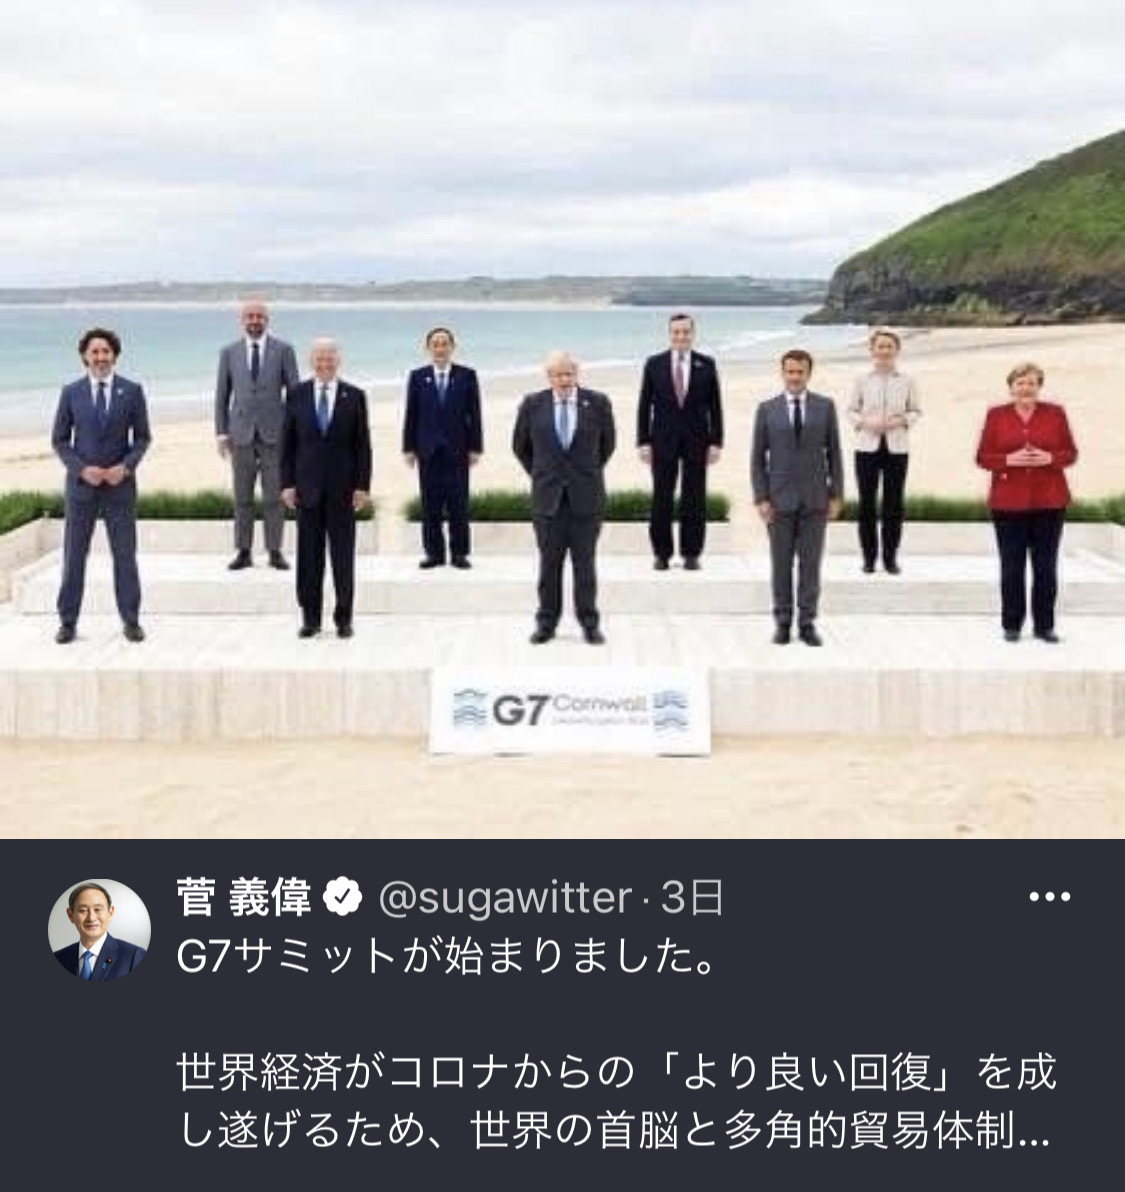 G7のトリミング画像を掲載した件に韓国が恥知らずな言い訳をして日本を巻き込もうと必死 U 1 News